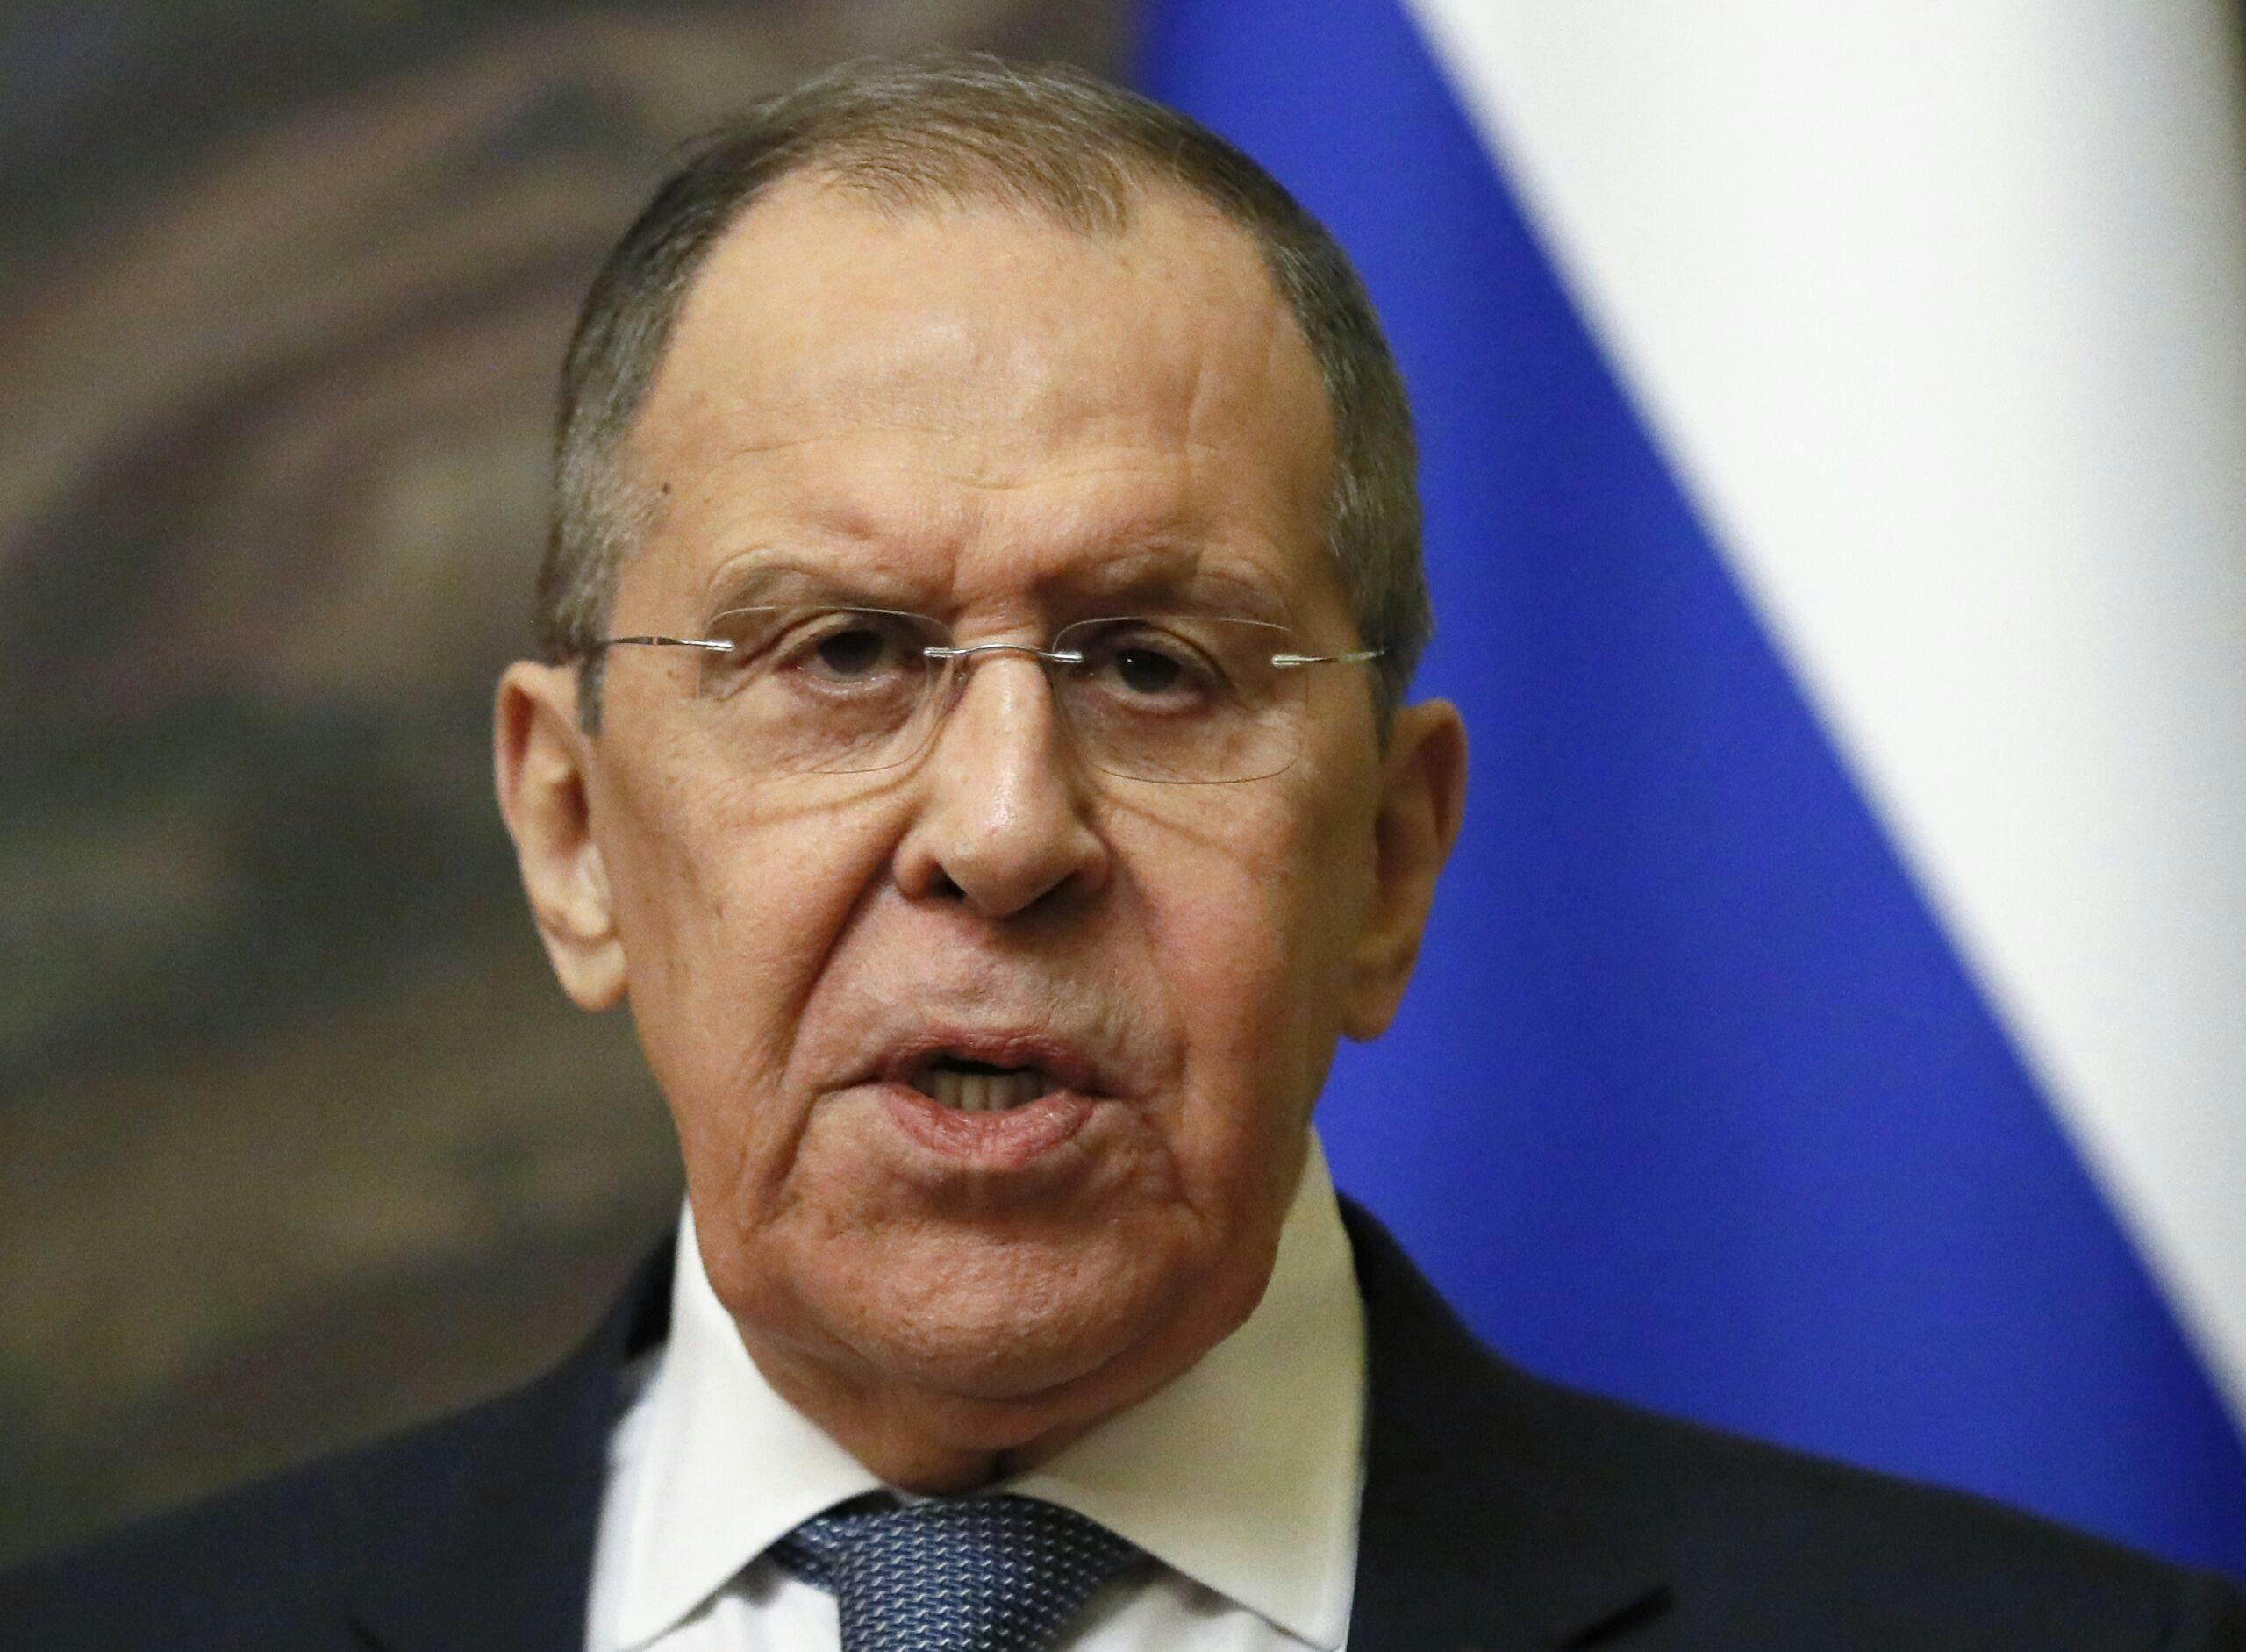 Le dichiarazioni antisemite di Lavrov potrebbero avere gravi conseguenze per le relazioni della Russia con Israele